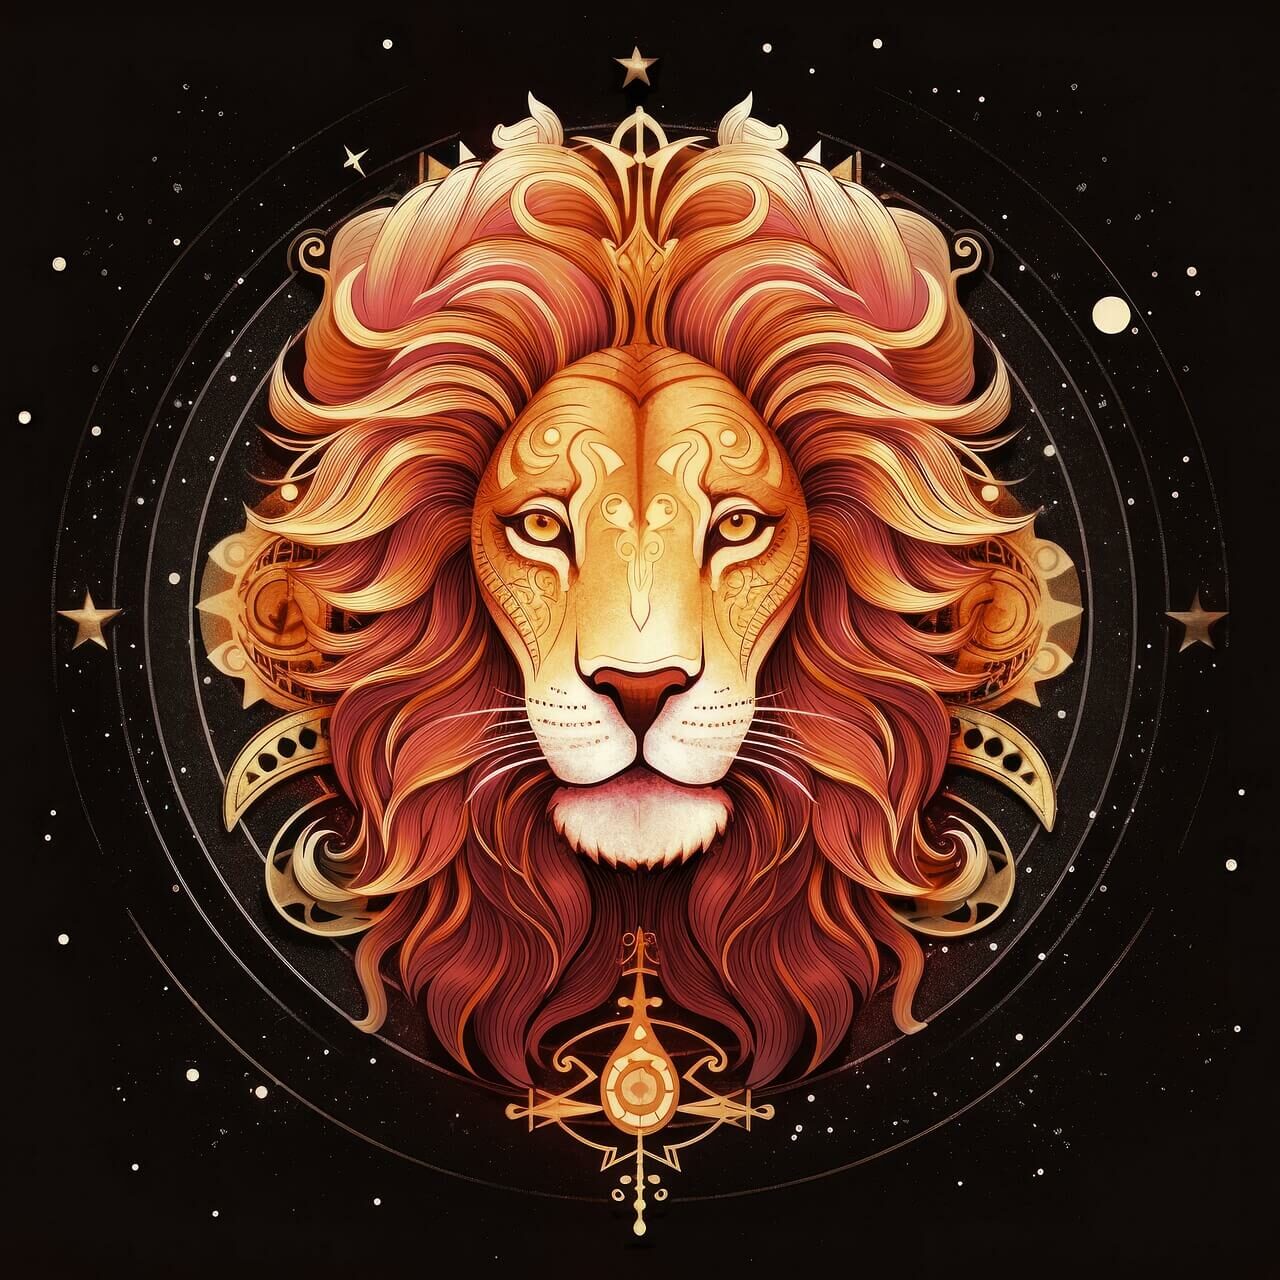 Compatibilité amoureuse du signe astrologique du Lion